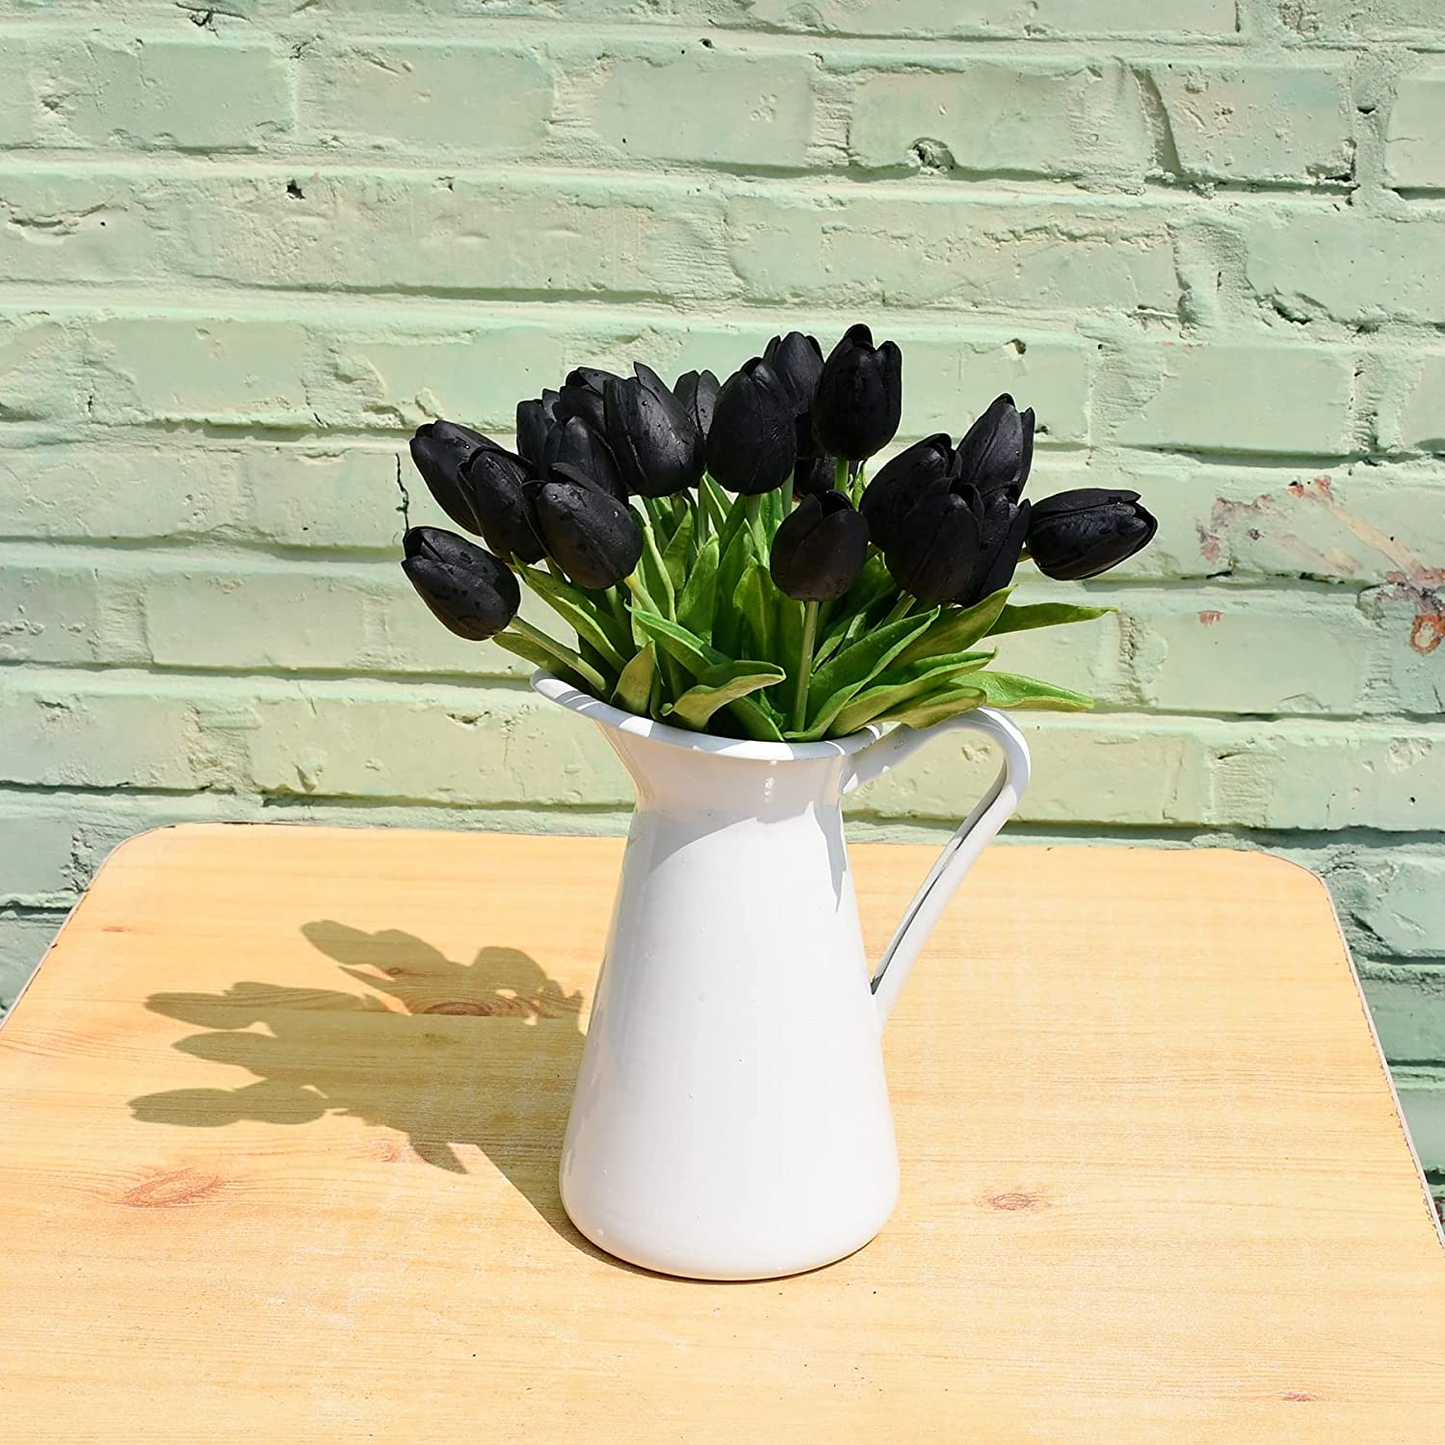 20Pcs Black Flowers Artificial Tulip Silk Flowers 13.5" for Home Decorations Centerpieces Arrangement Wedding Bouquet